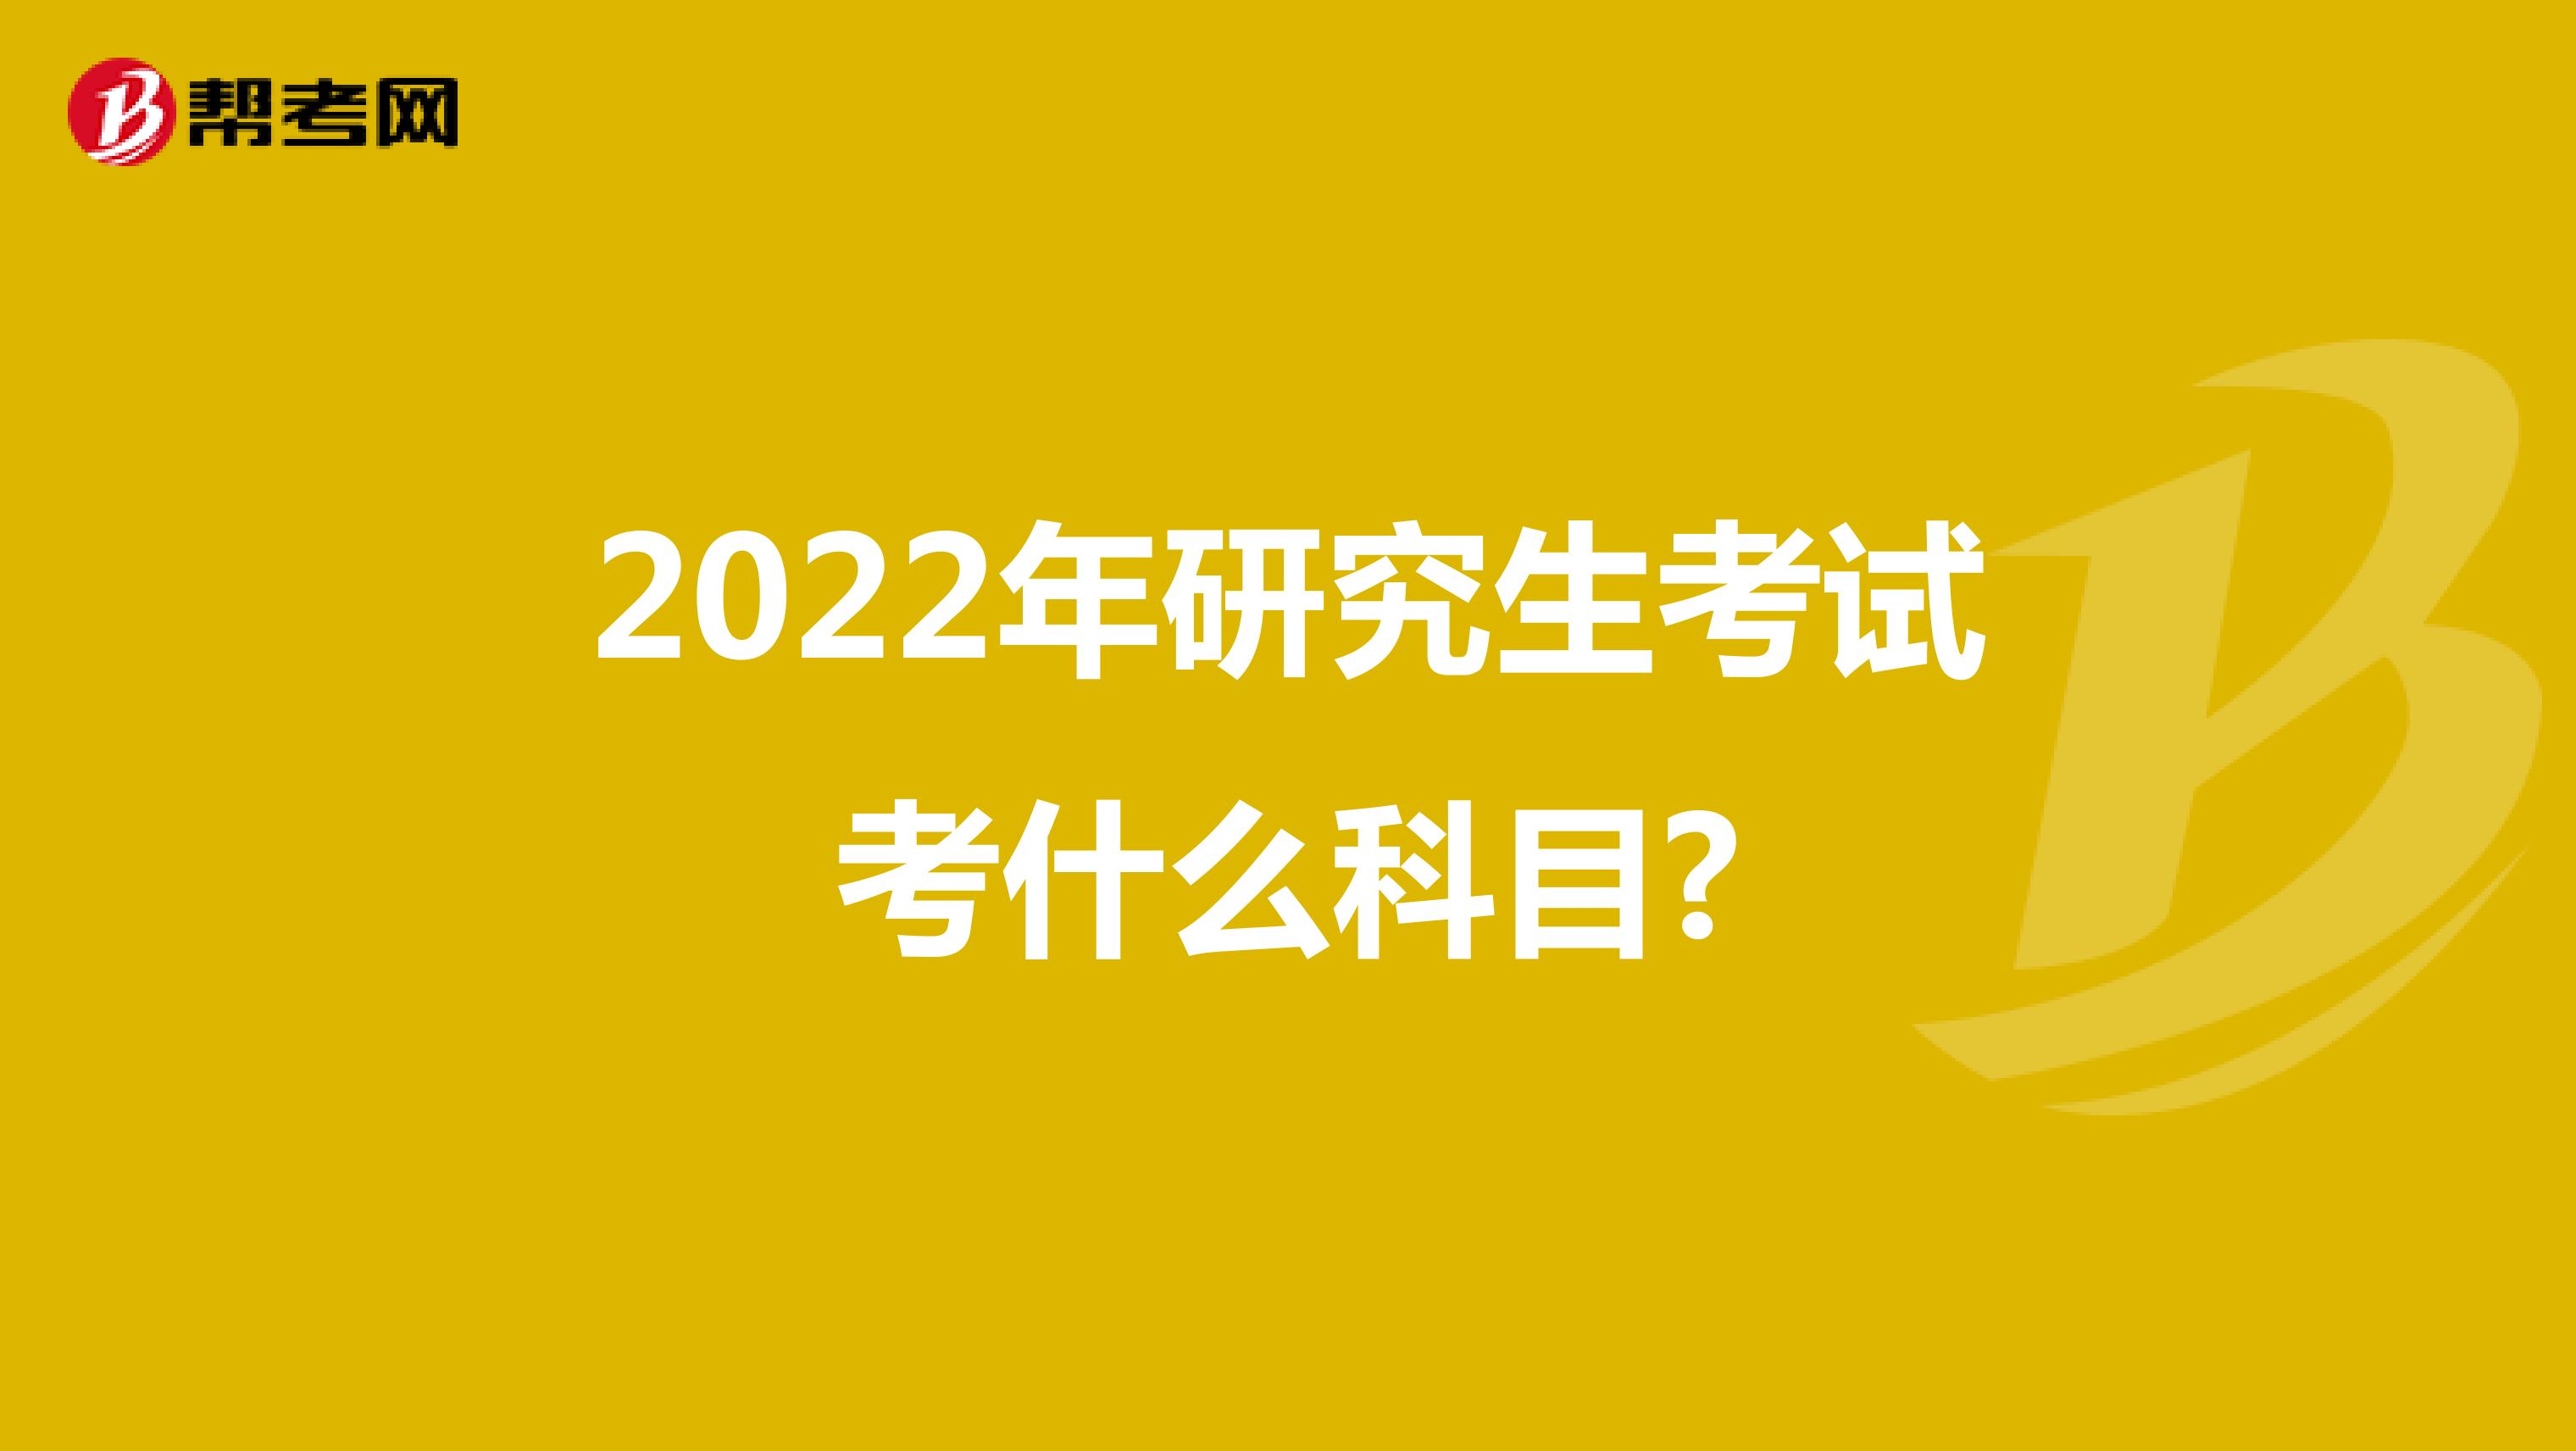 2022年研究生考试考什么科目?